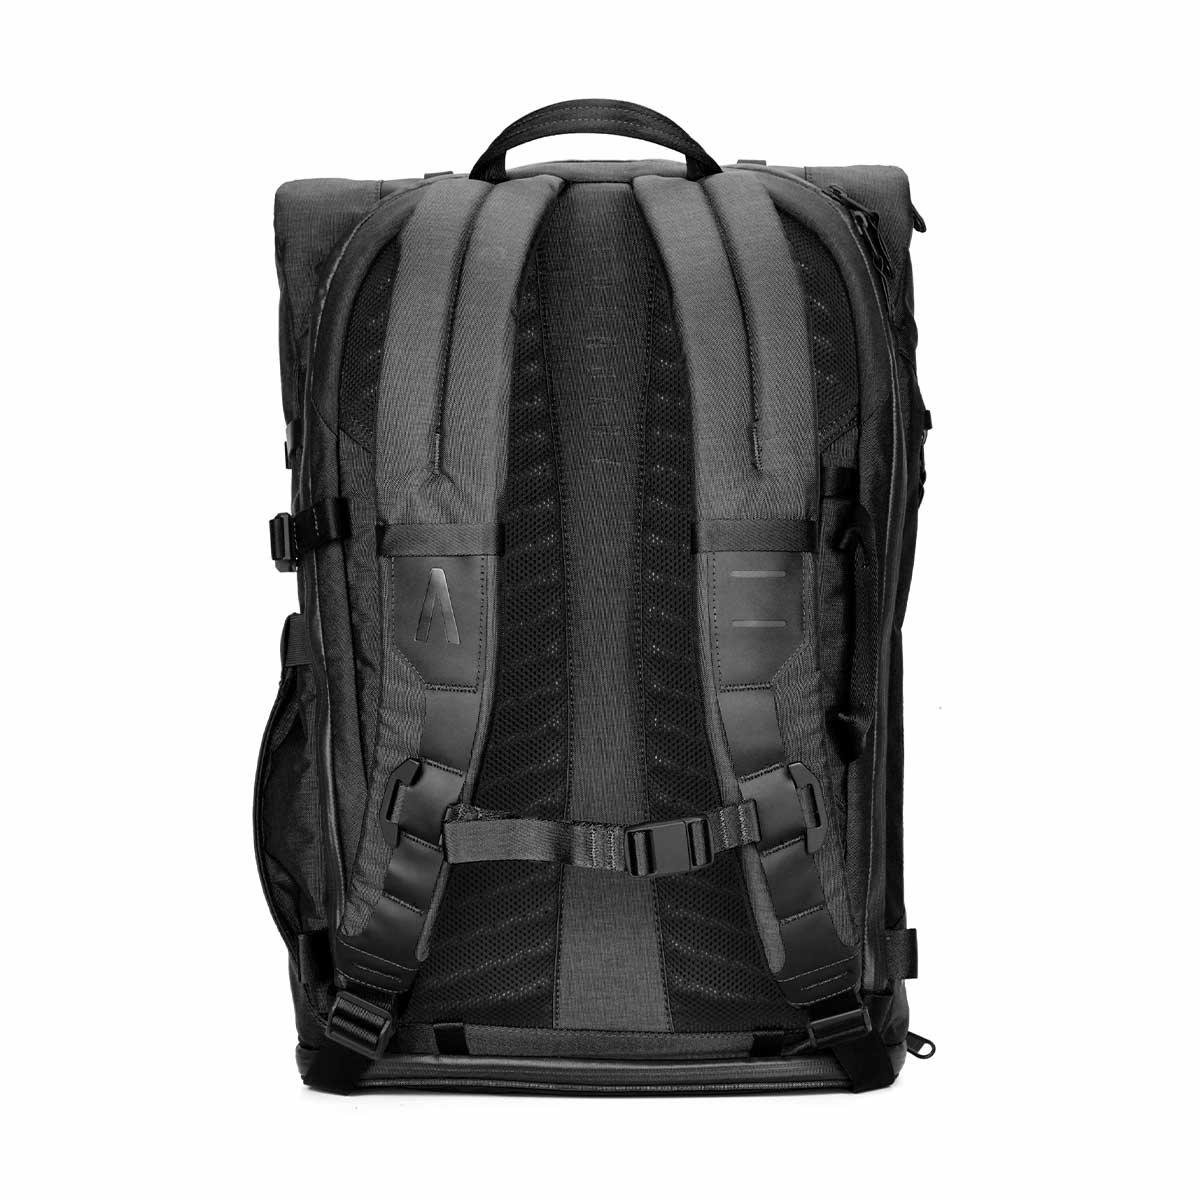 Boundary Supply Errant Pack Backpack Starter Kit (Obsidian Black)